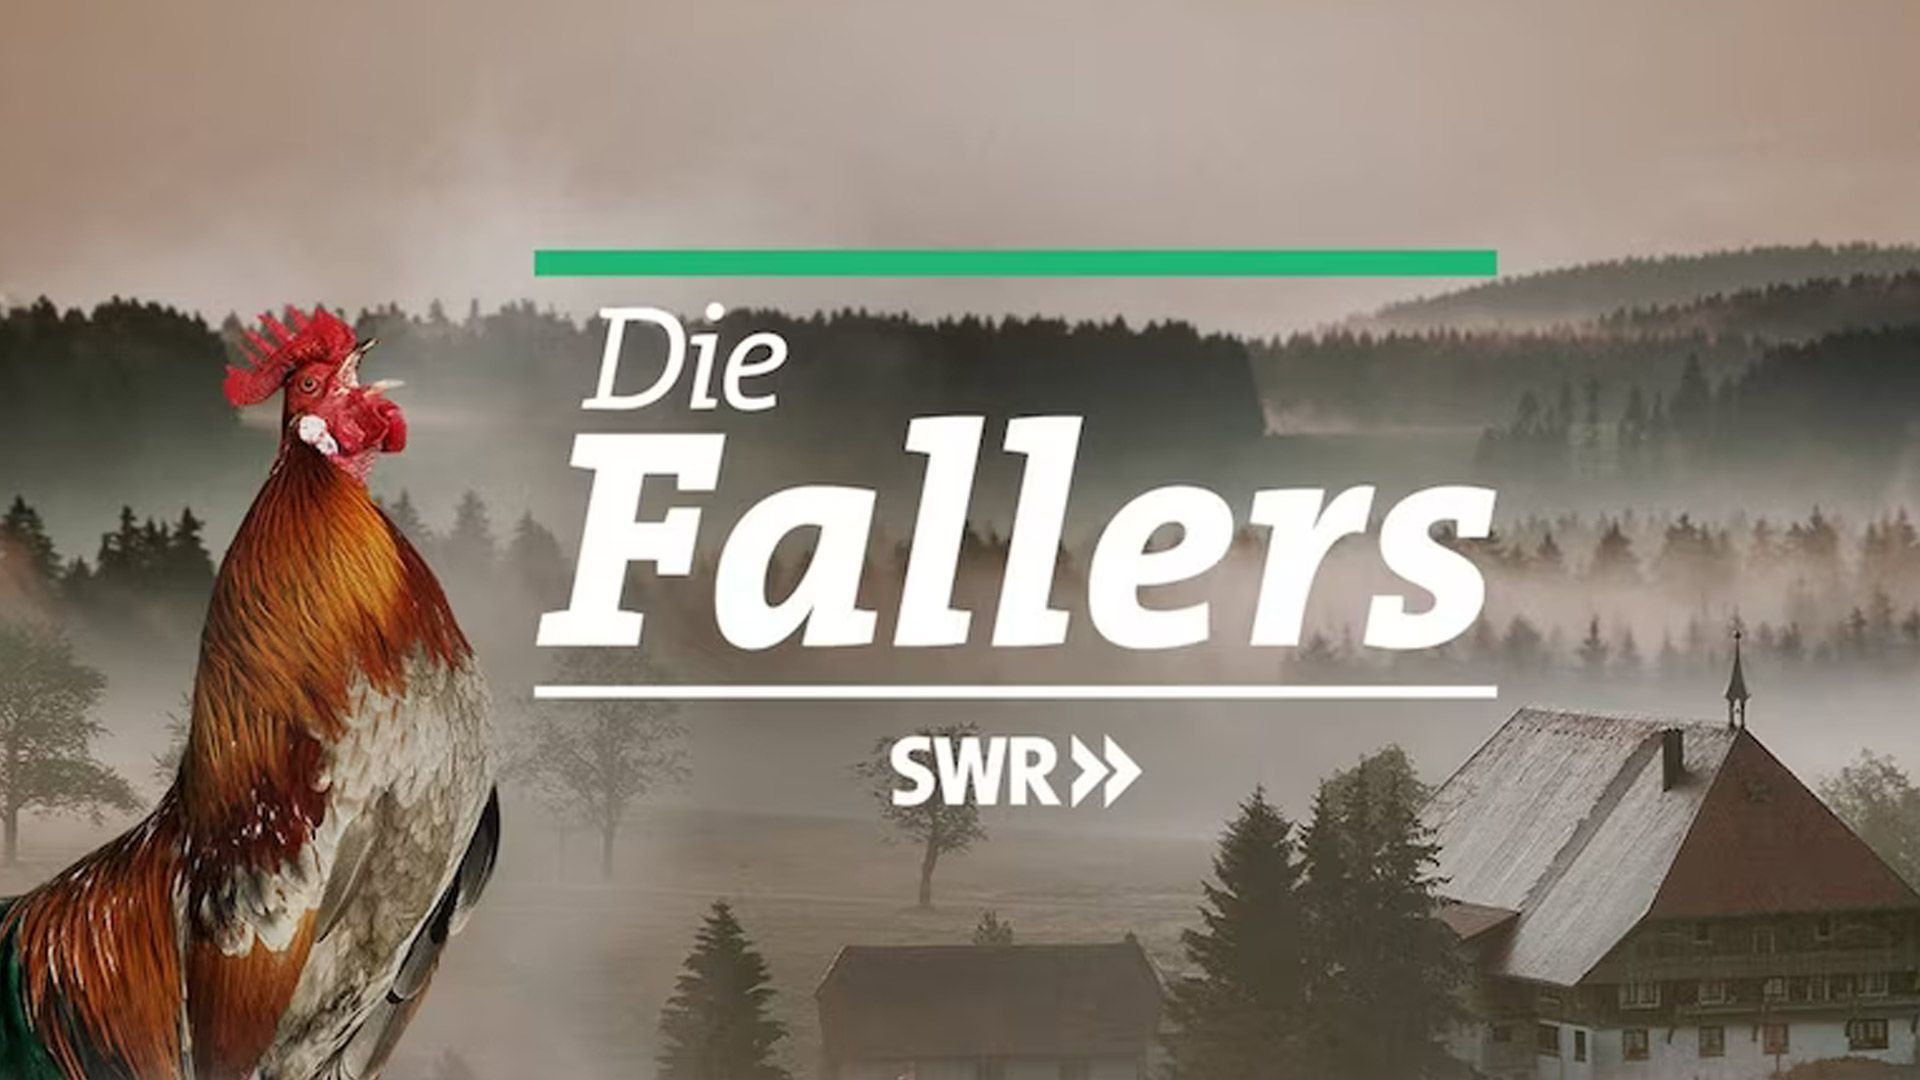 Die Fallers - Eine Schwarzwaldfamilie (922)